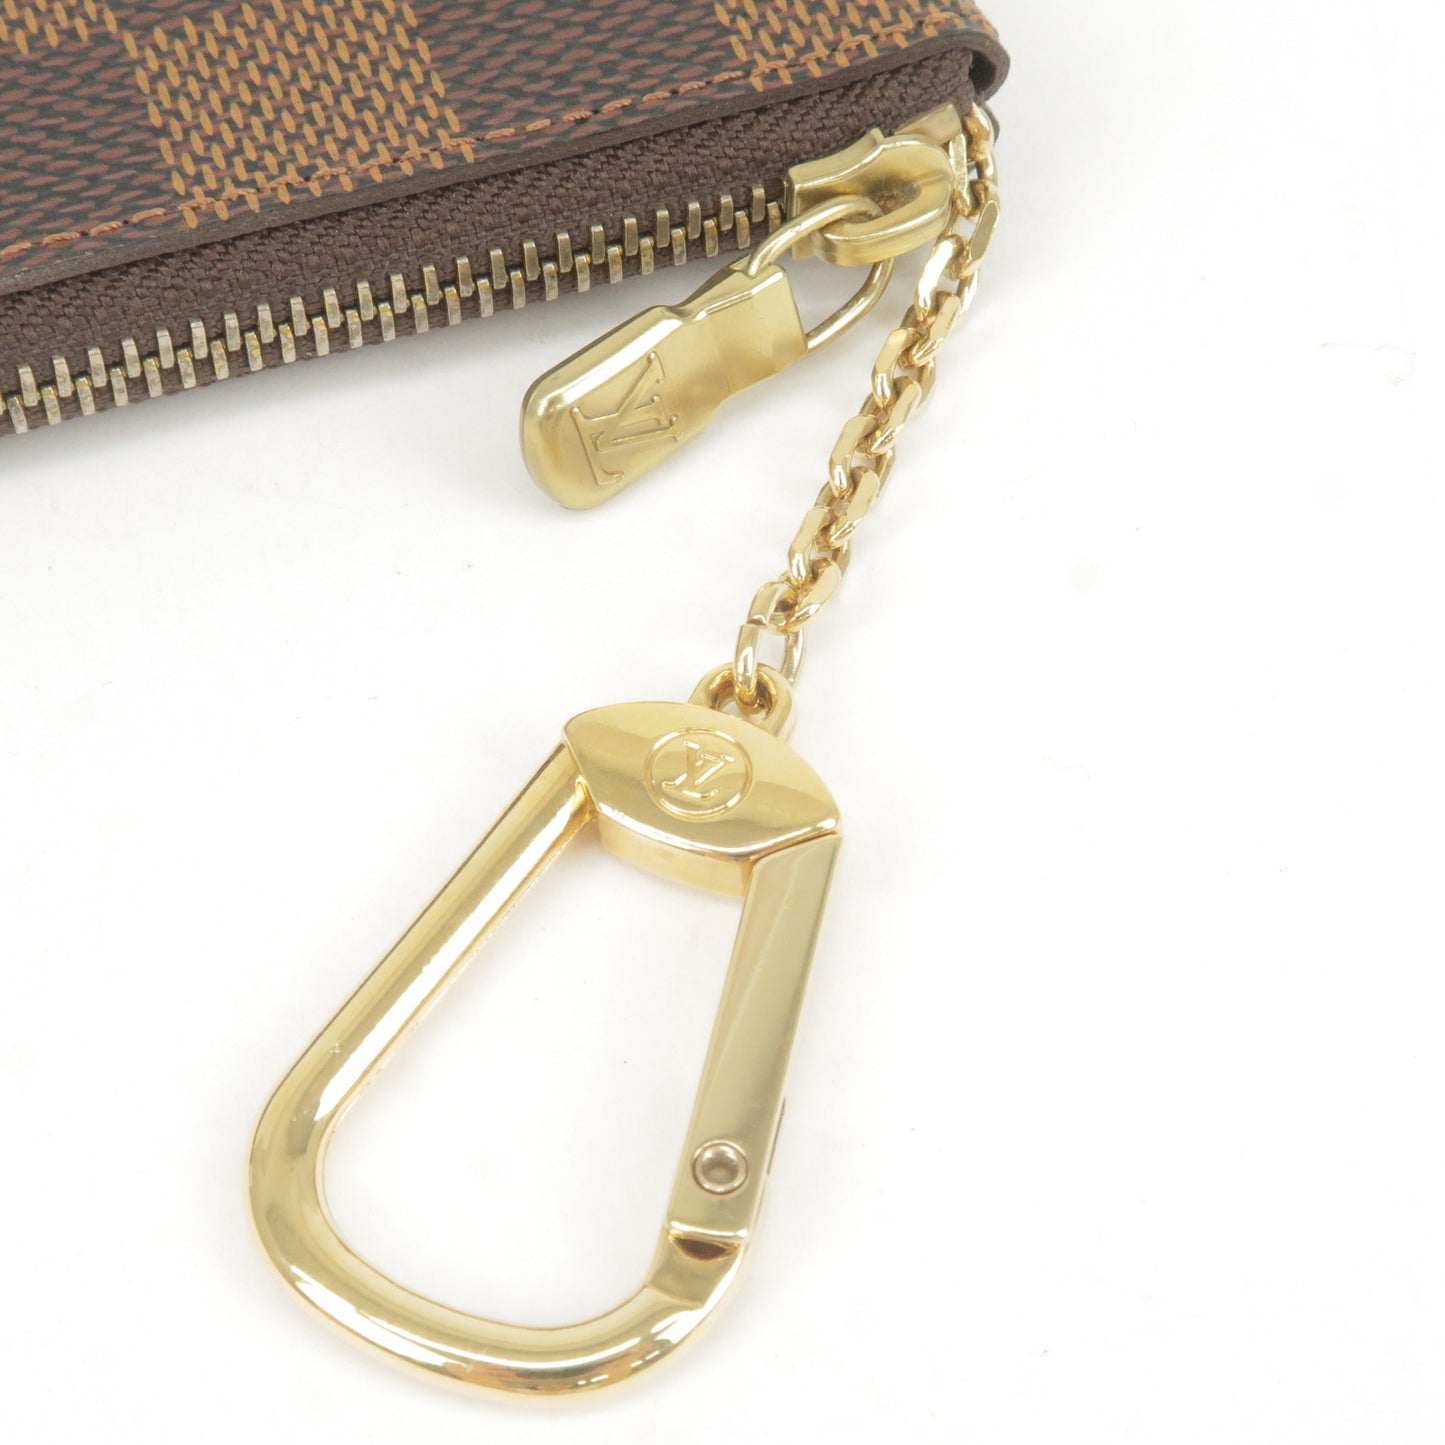 Louis Vuitton Damier Pochette Cles Coin Case N62658